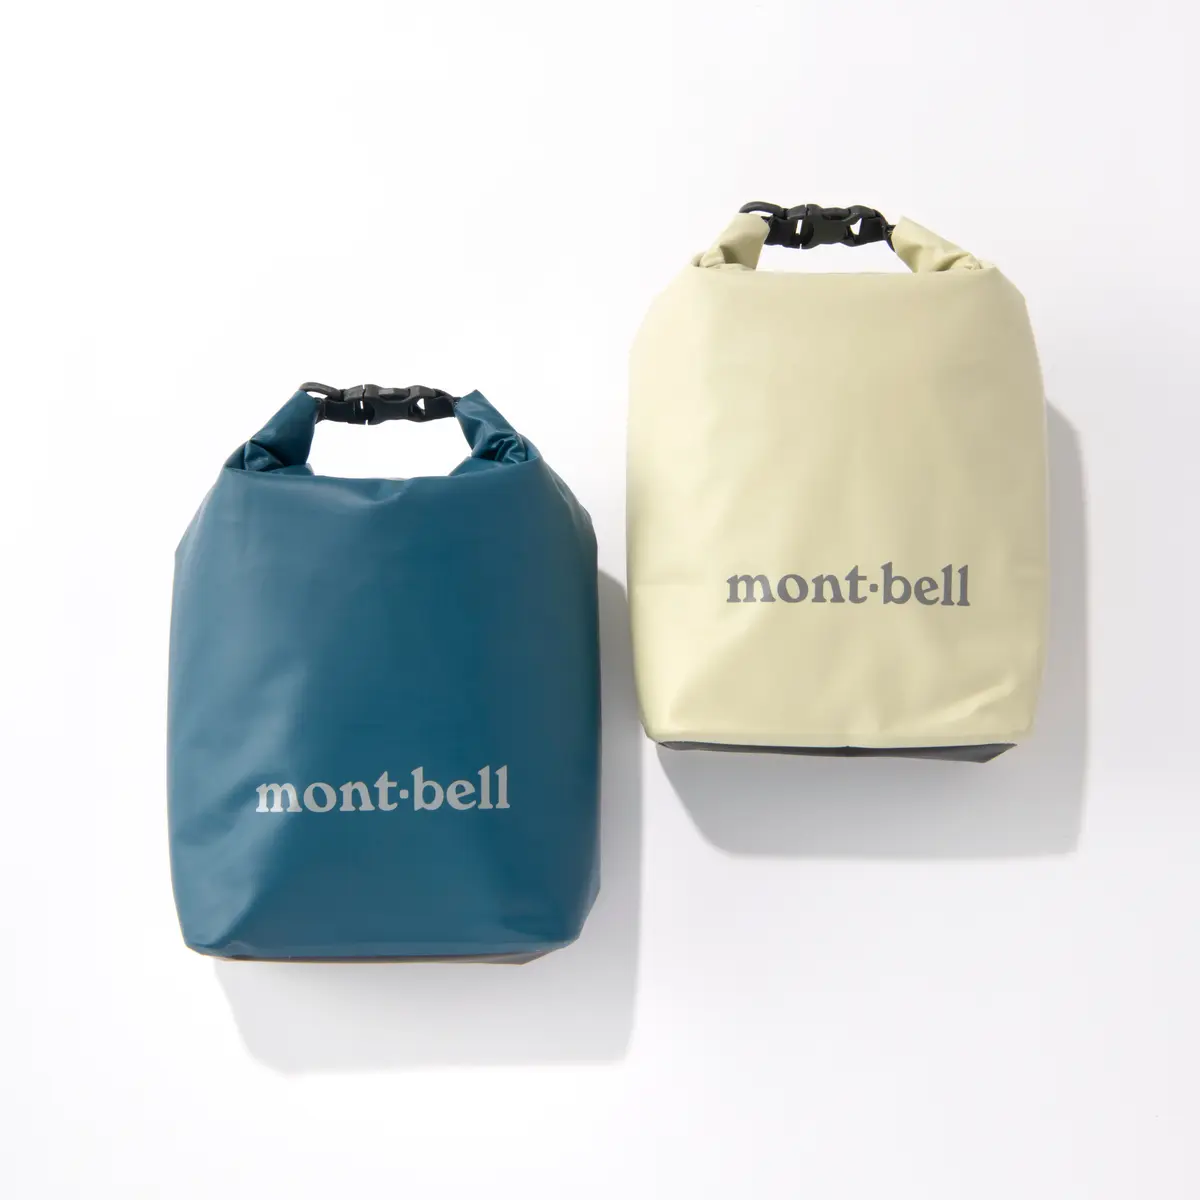 『モンベル』のクールバッグのカラバリ画像